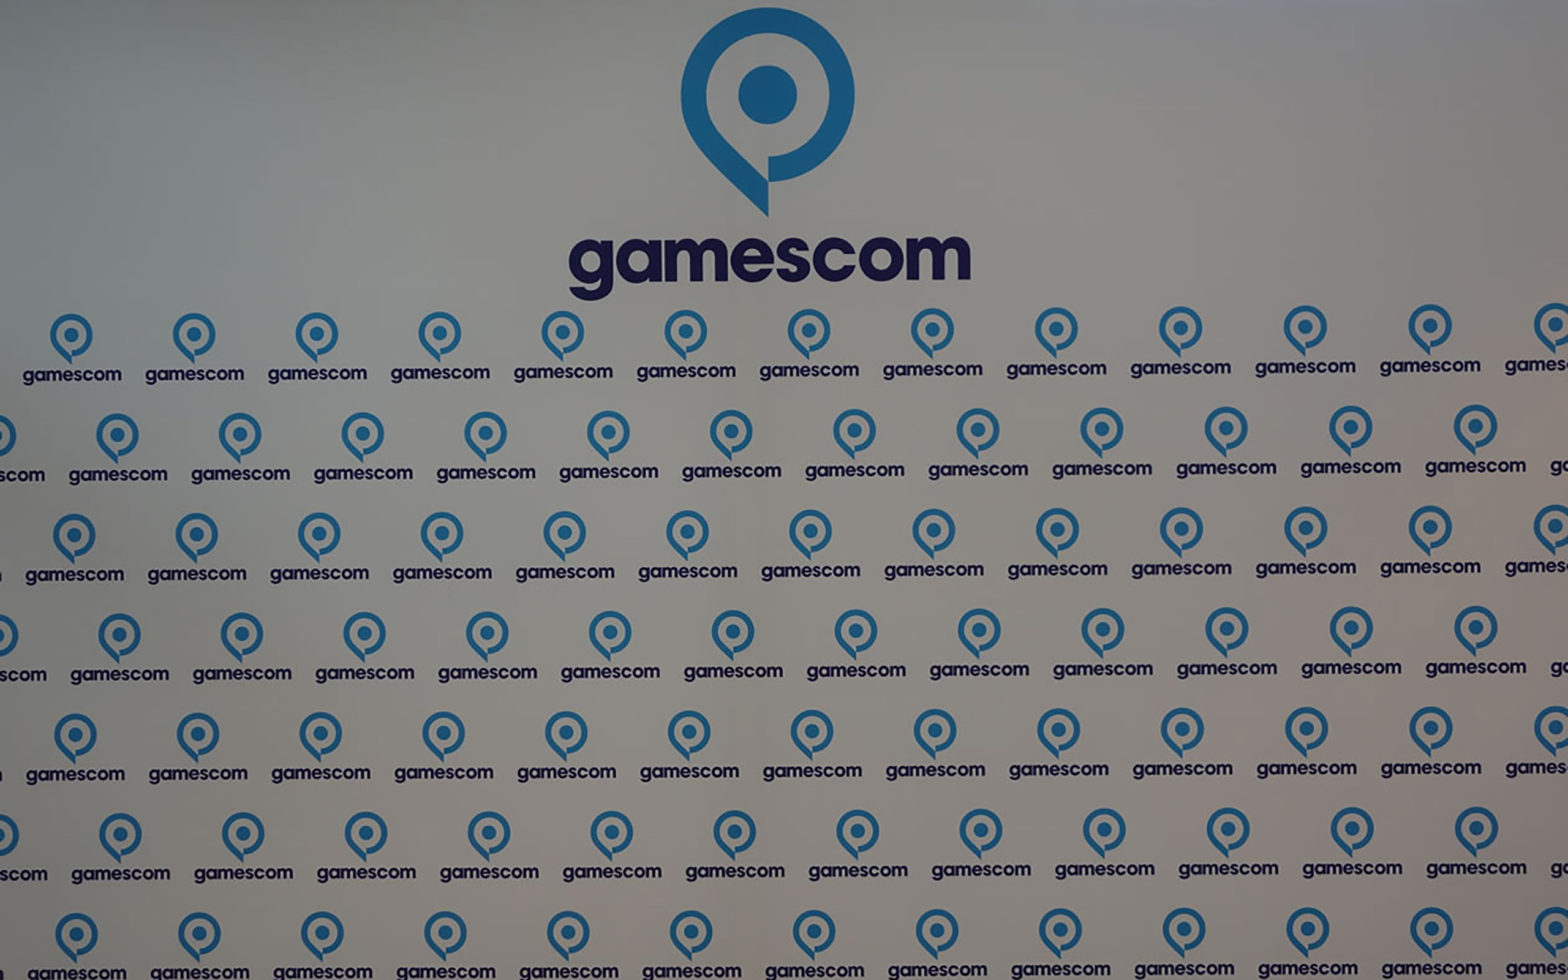 GamesCom 2016